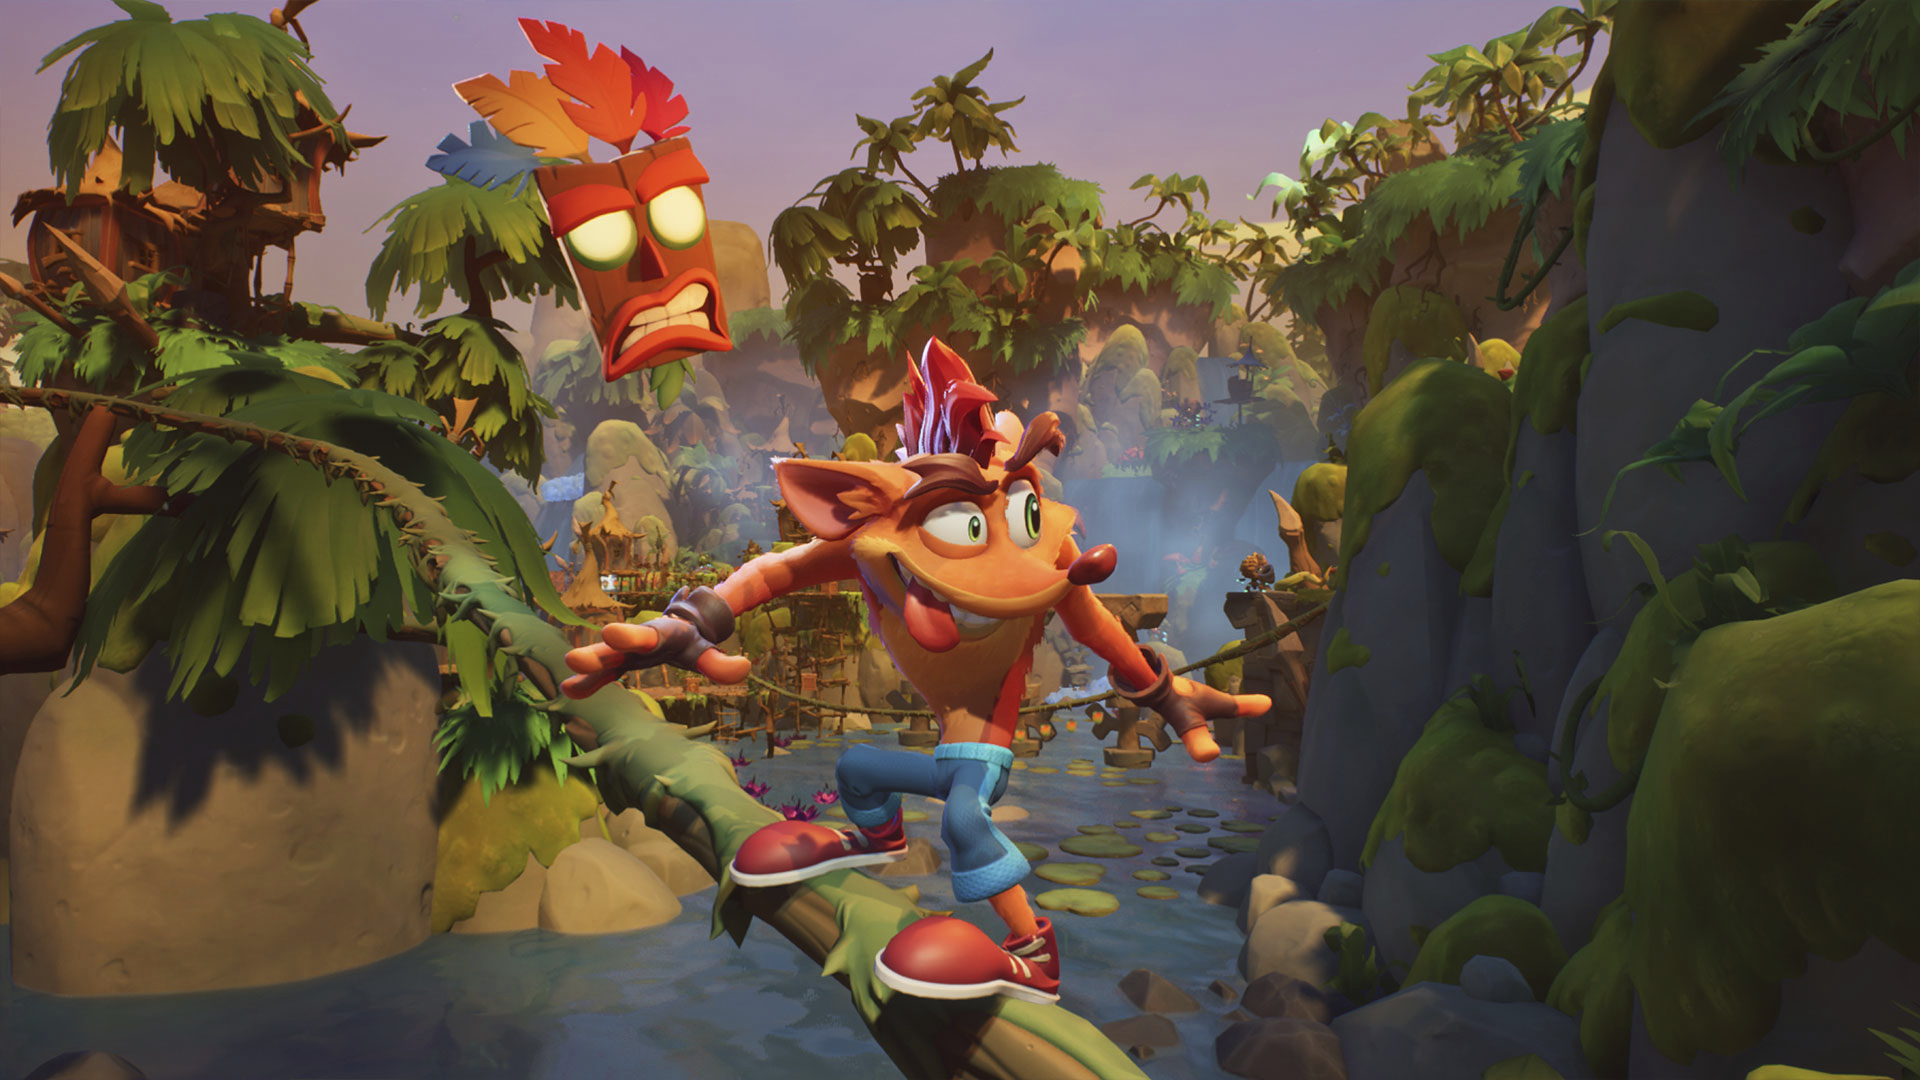 Capture d'écran de Crash Bandicoot 4: It's About Time - Crash en train de glisser sur un tronc d'arbre dans une jungle